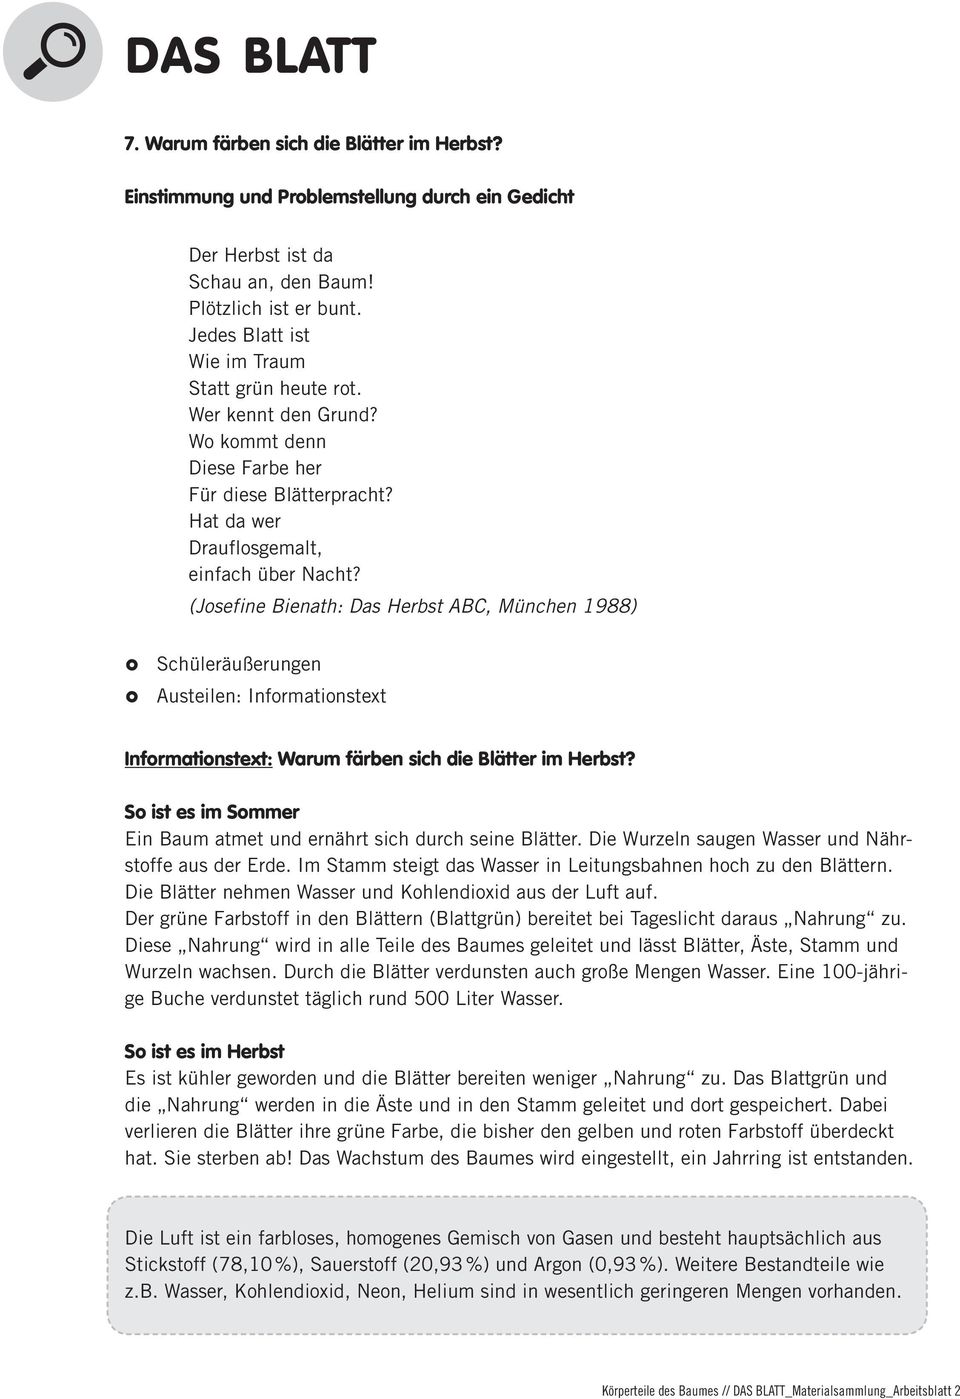 (Josefine Bienath: Das Herbst ABC, München 1988) Schüleräußerungen Austeilen: Informationstext Informationstext: Warum färben sich die Blätter im Herbst?